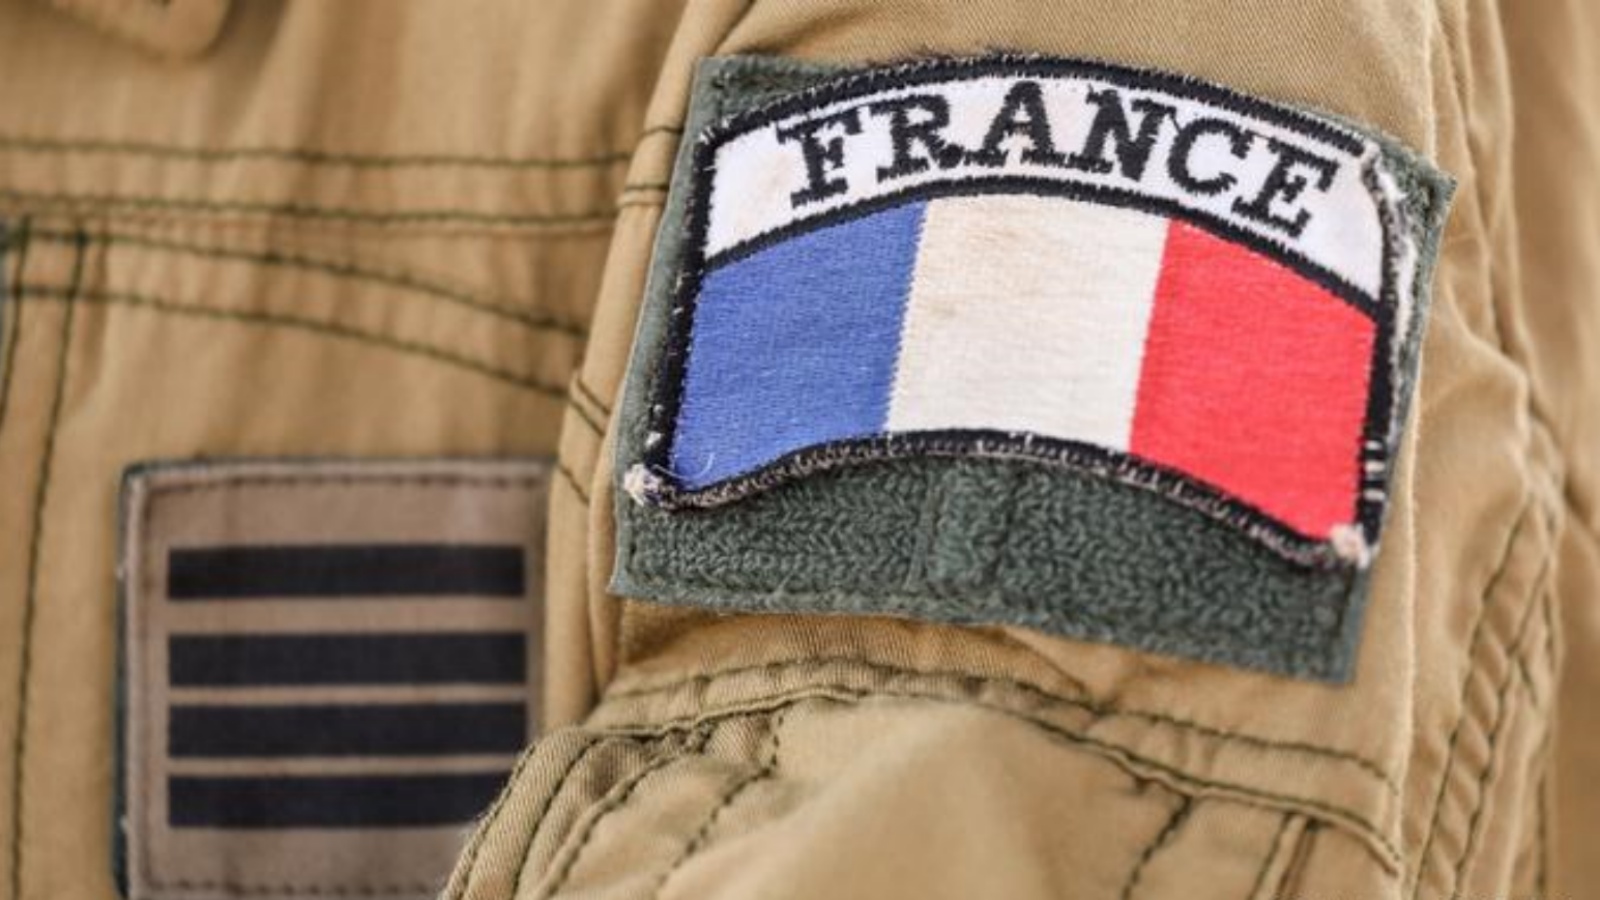 جندي من الجيش الفرنسي (توضيحية)